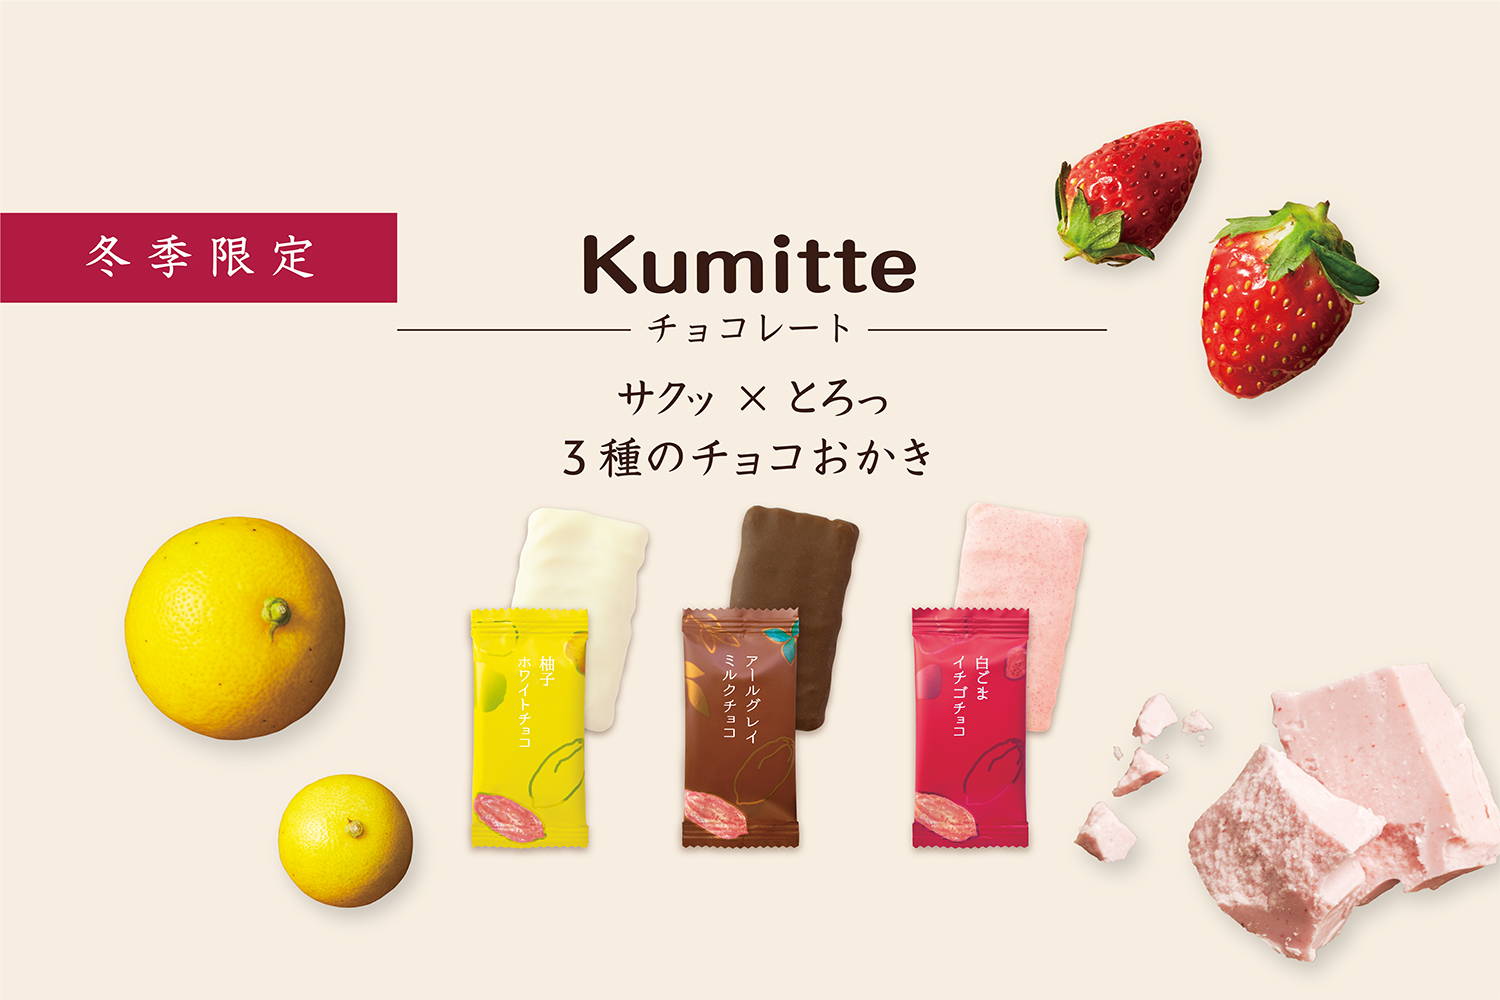 Kumitte チョコレート – 中央軒煎餅